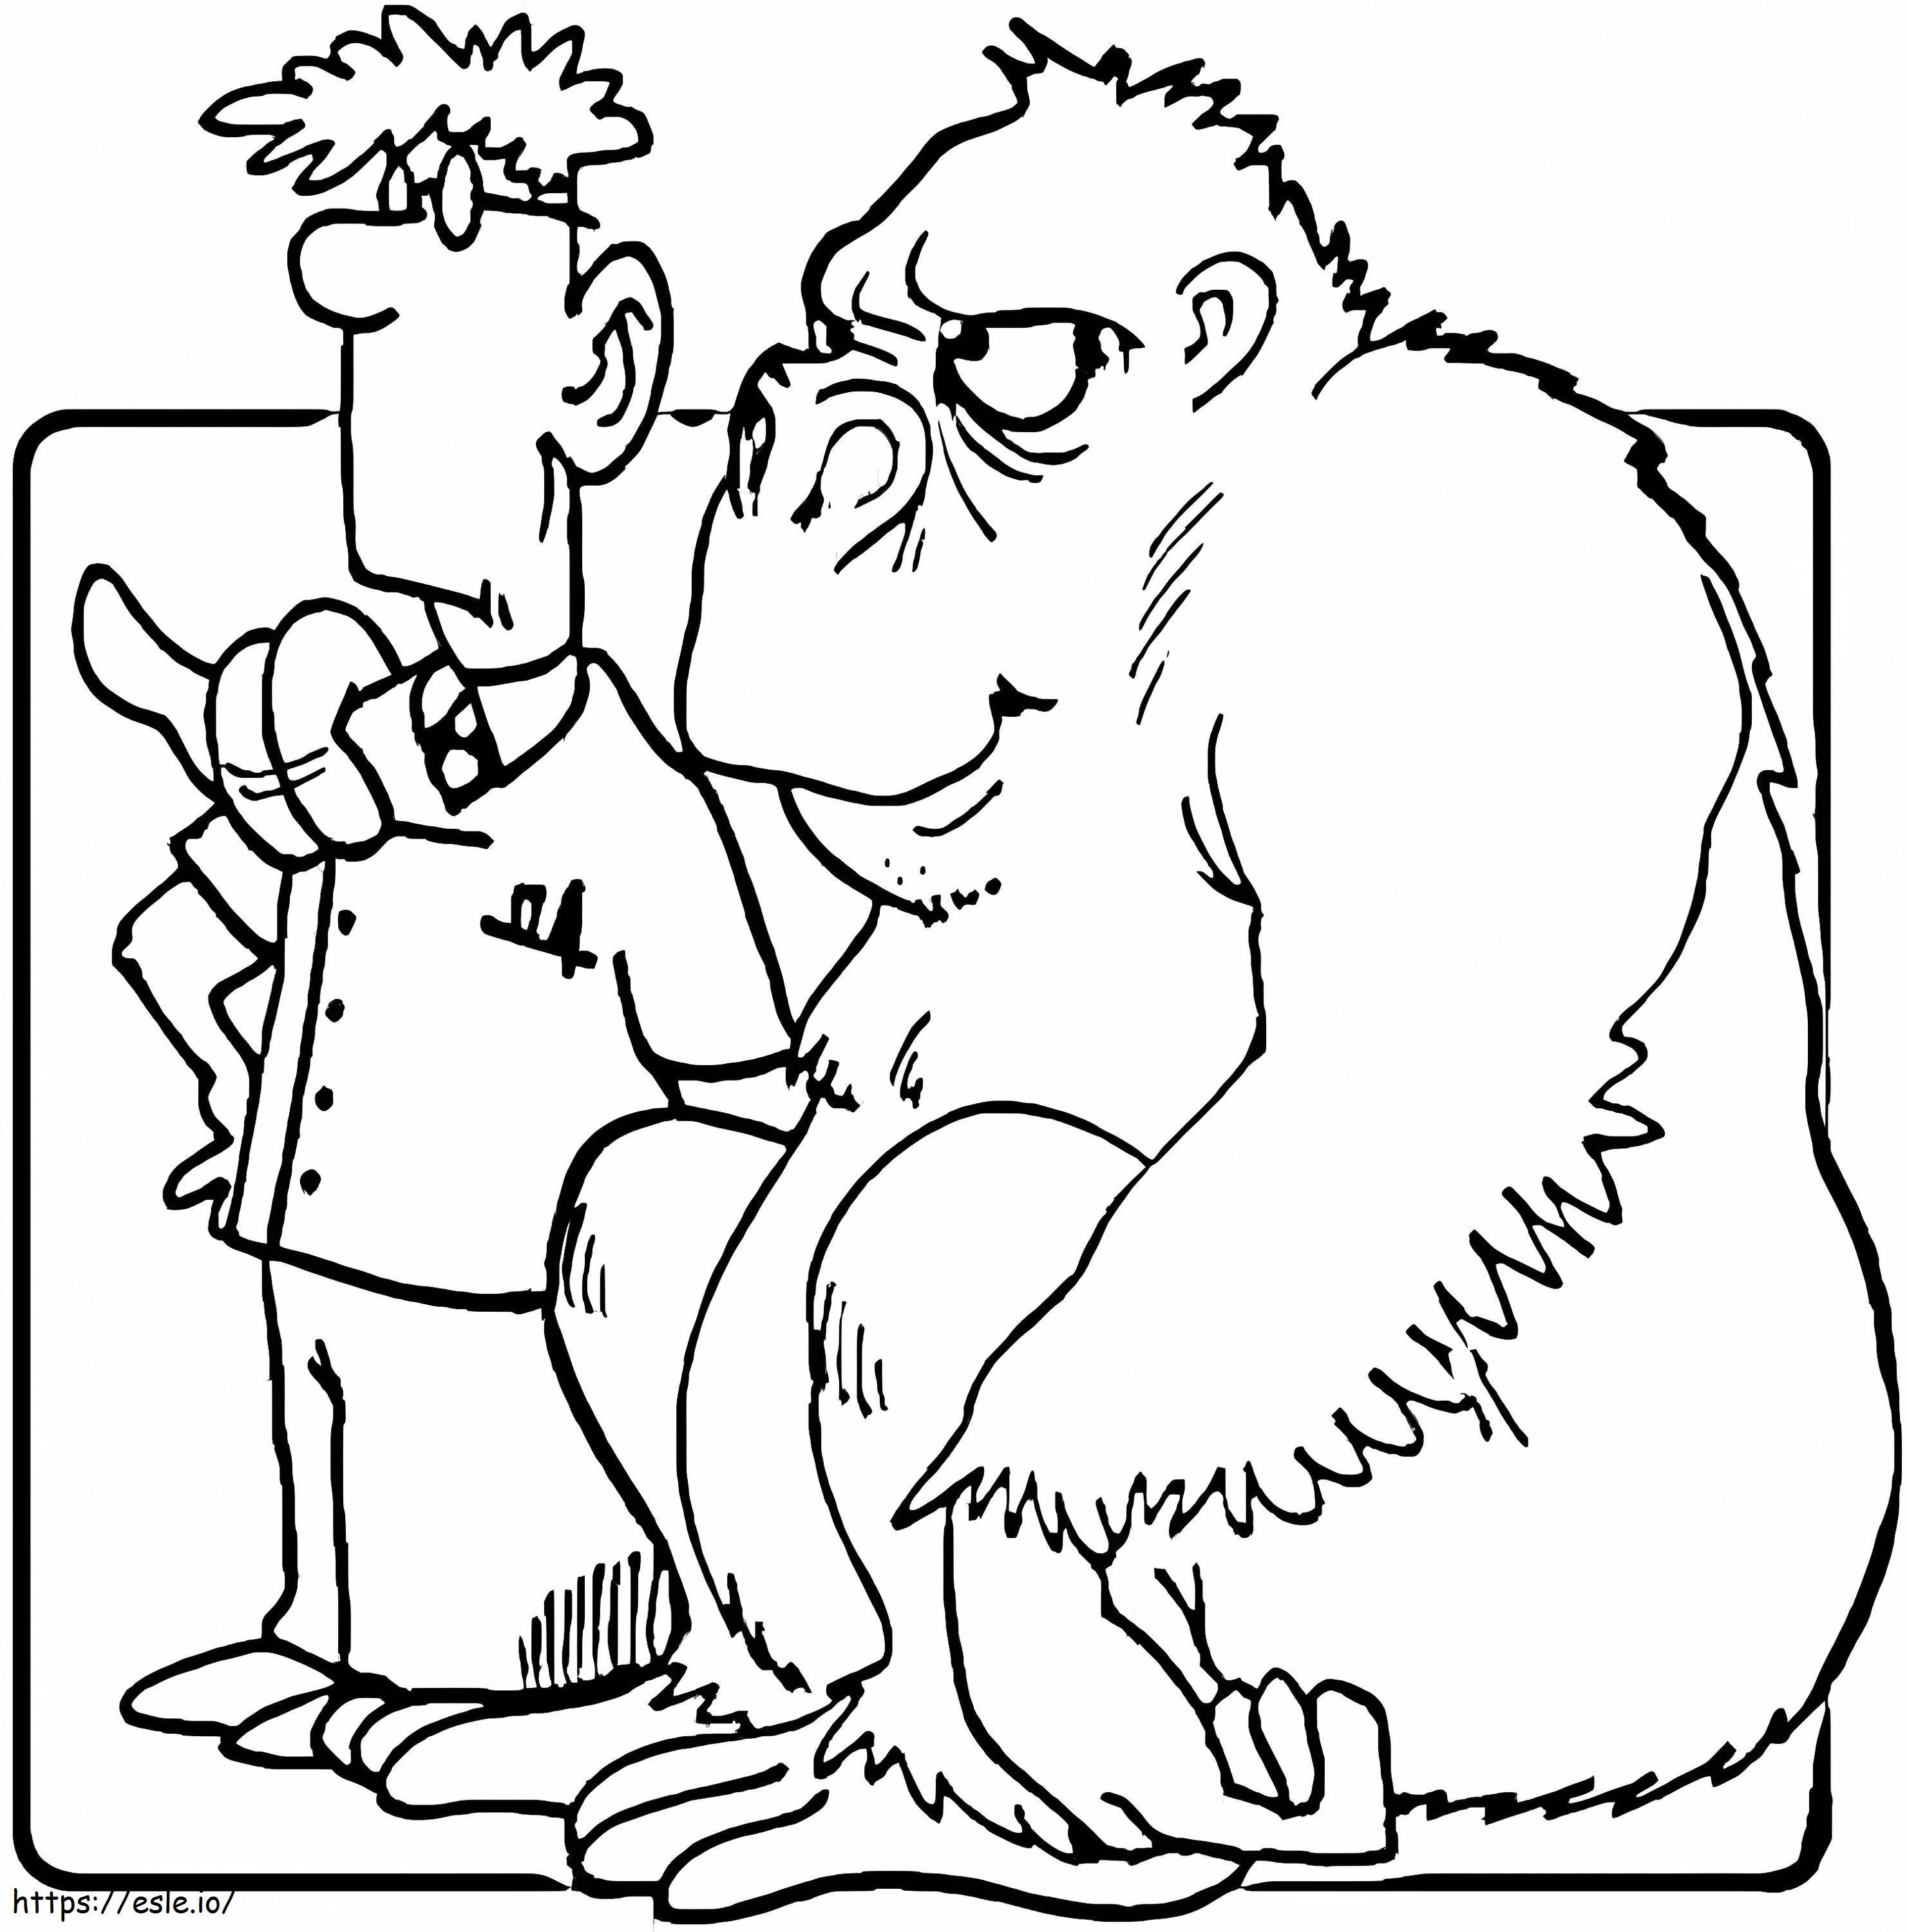 Tierarzt und Gorilla ausmalbilder